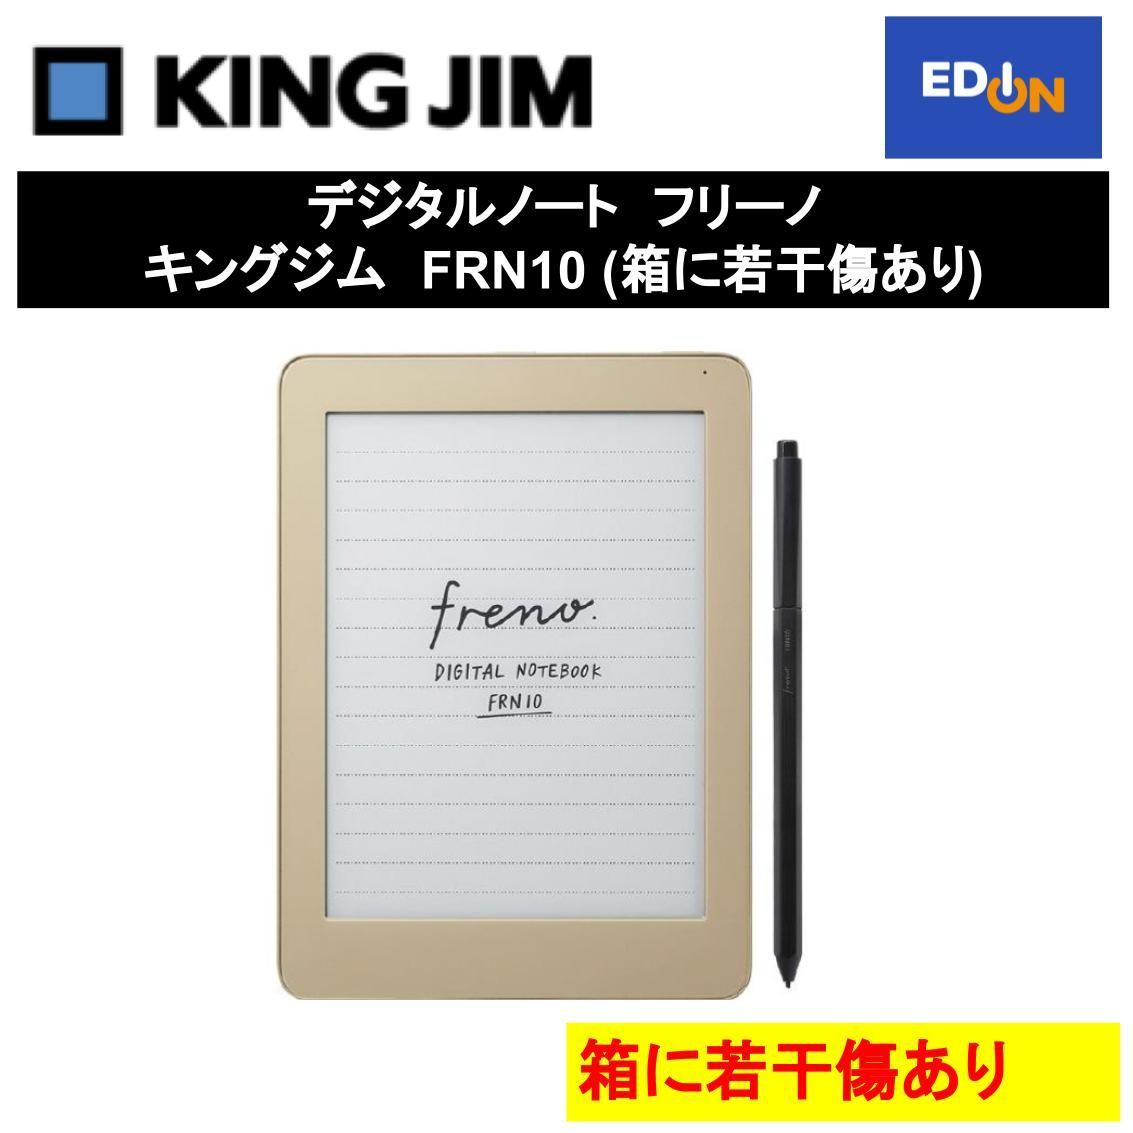 KING JIM キングジム デジタルノート フリーノ FRN10クイックスタート ...